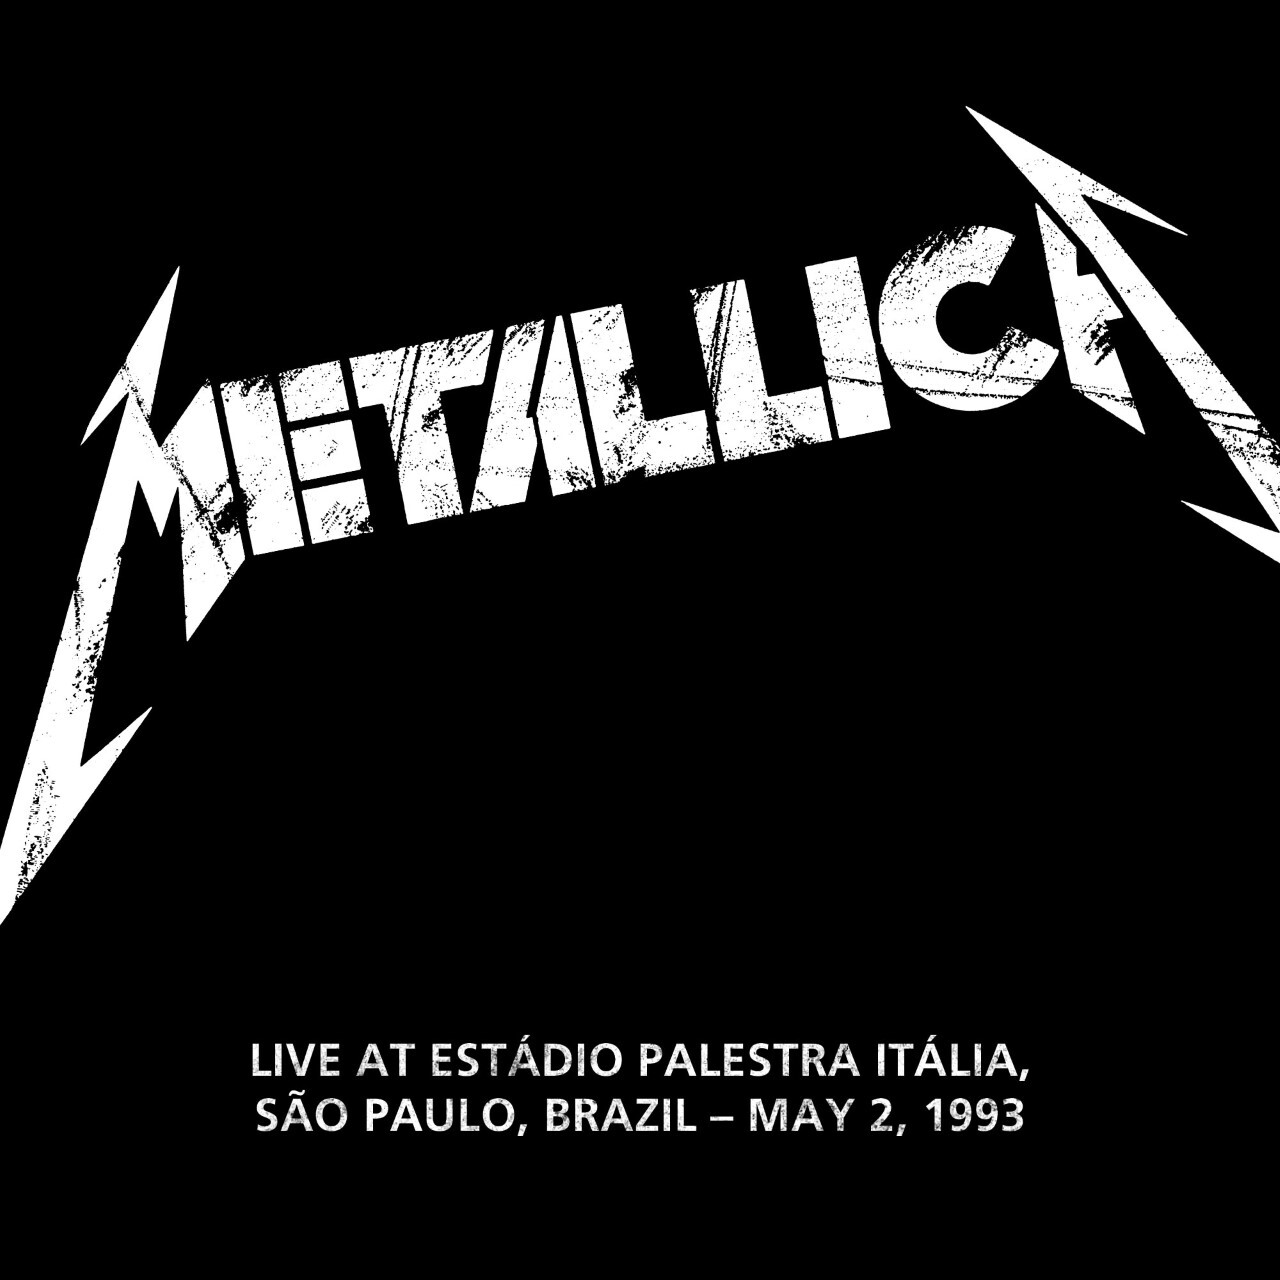 METALLICA (LIVEMETALLICA.COM) - 1993/05/02 Estádio Palestra Itália, São Paulo, Brazil cover 